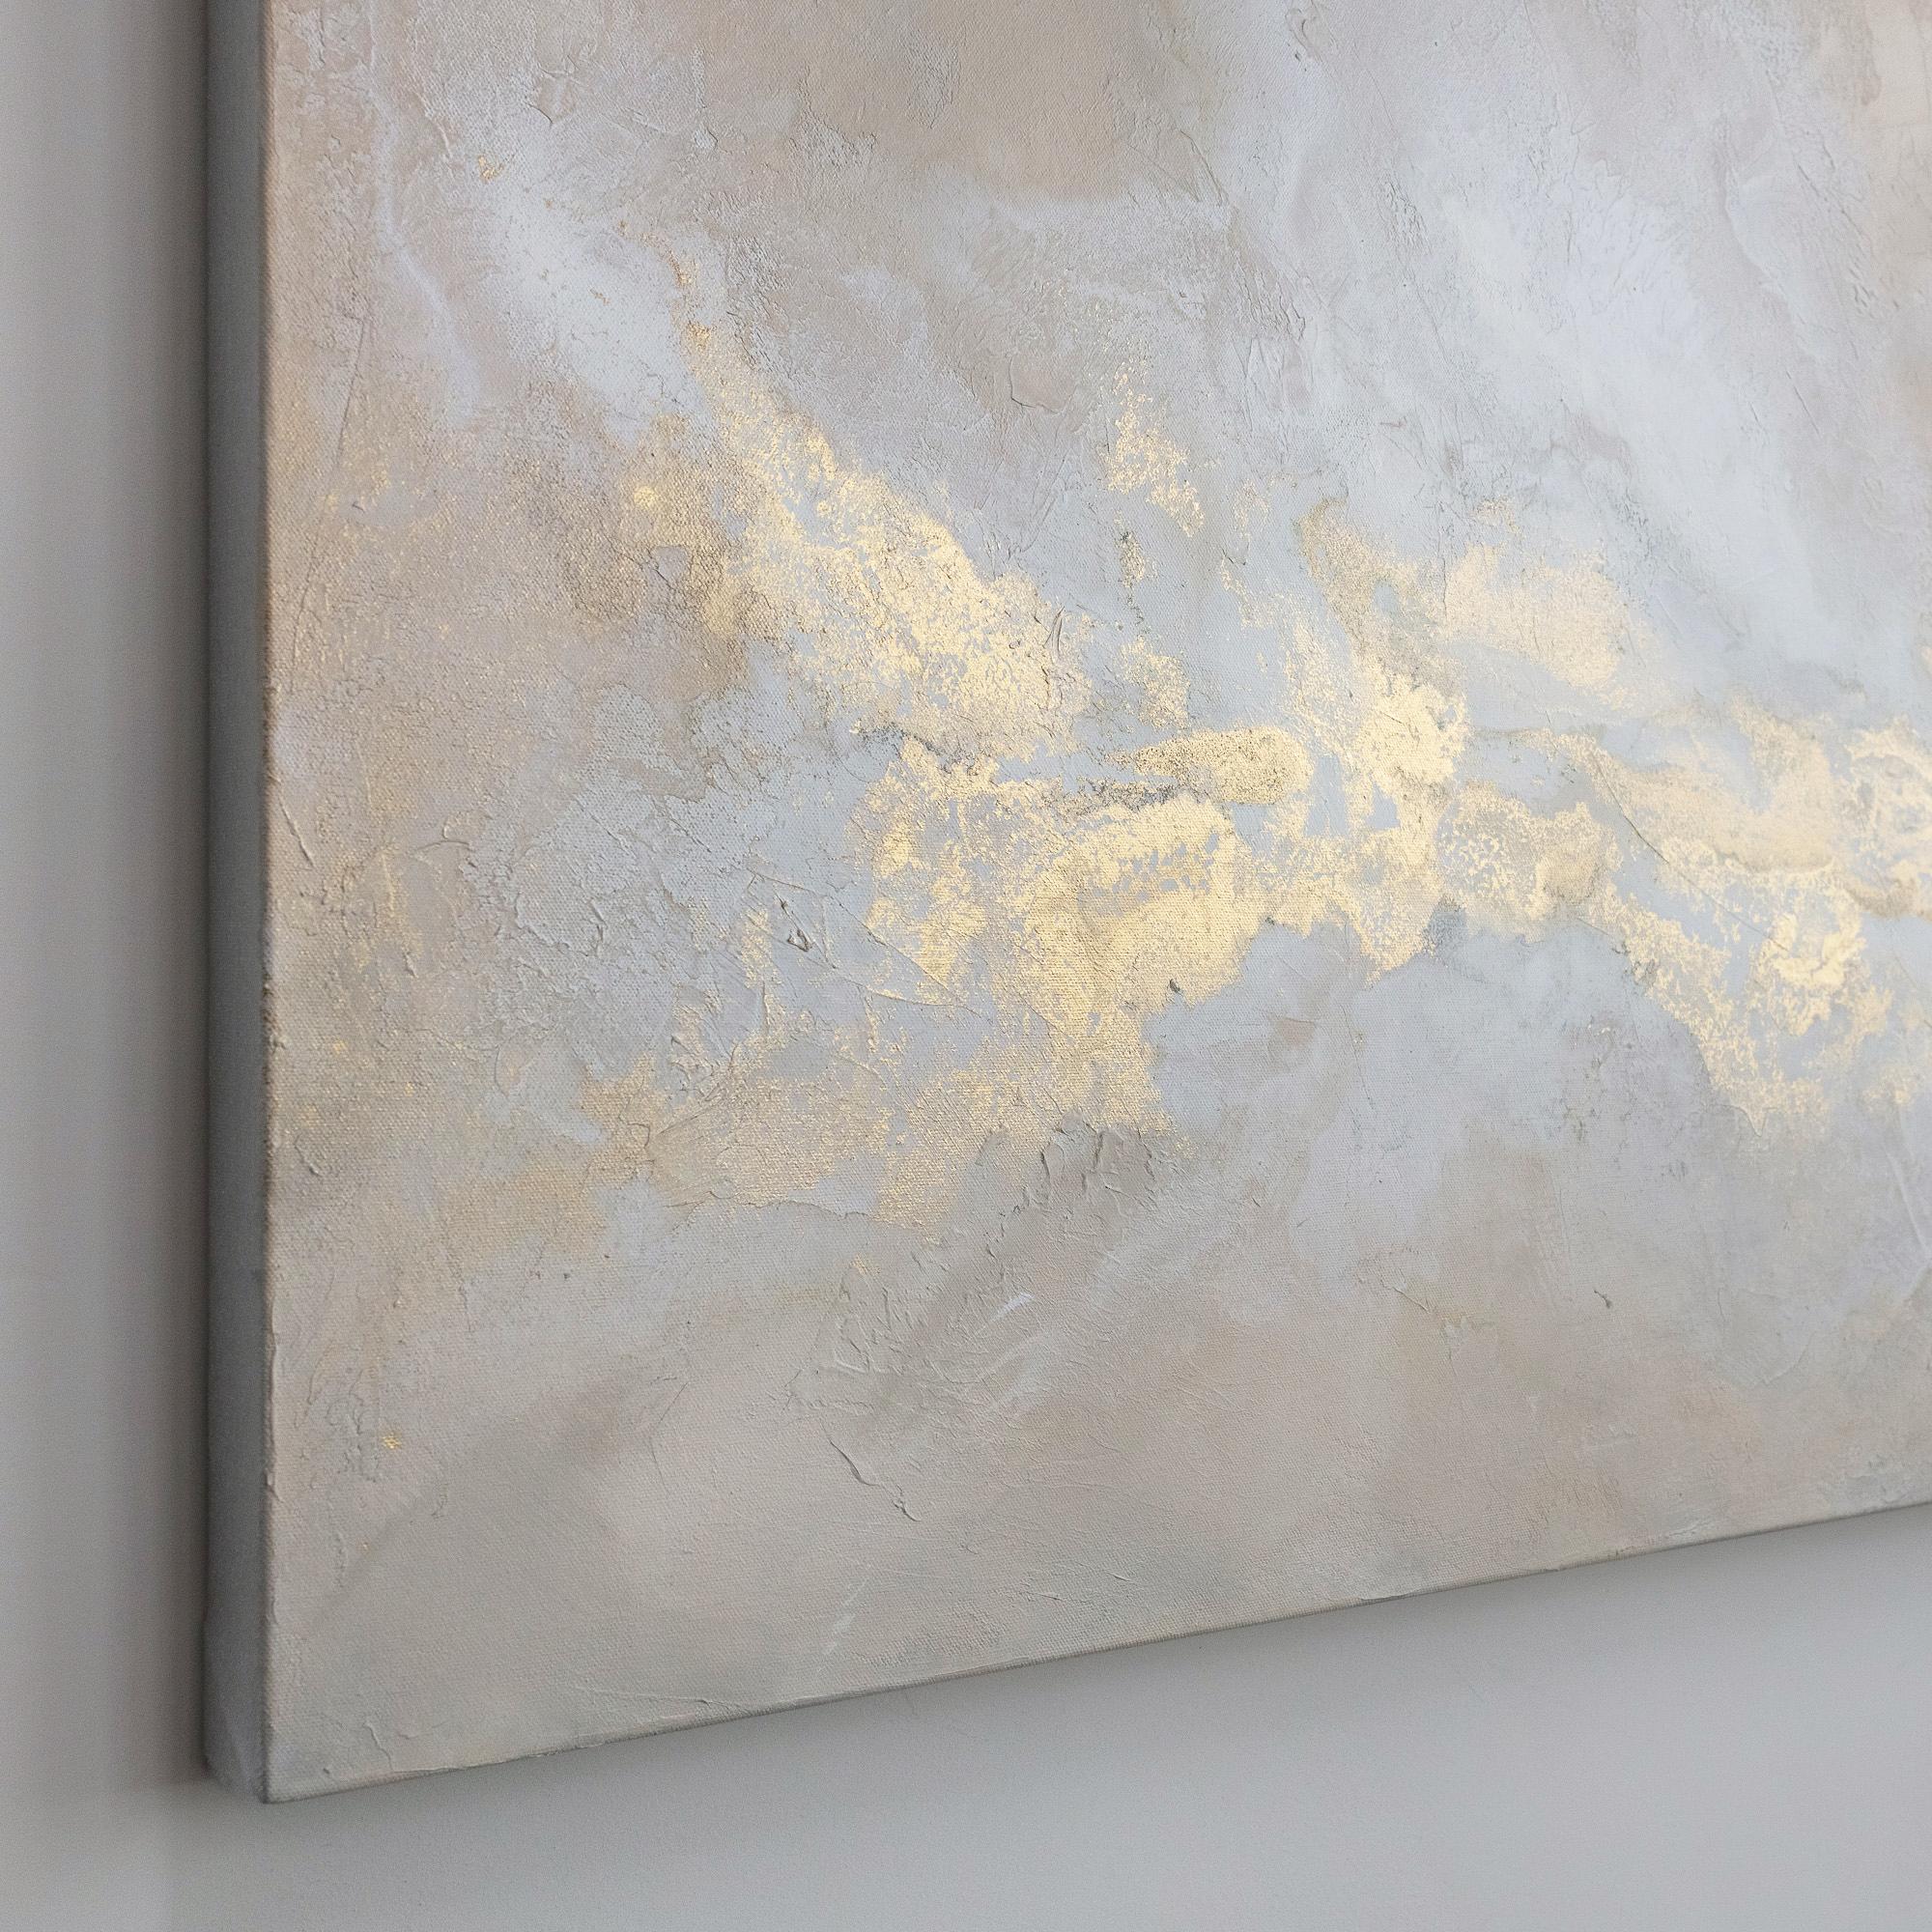 Cette grande peinture abstraite de Julia Contacessi est réalisée avec des techniques mixtes sur toile. Il se caractérise par une composition légère et équilibrée et une palette neutre et chaleureuse avec des tons blush, du blanc et des accents